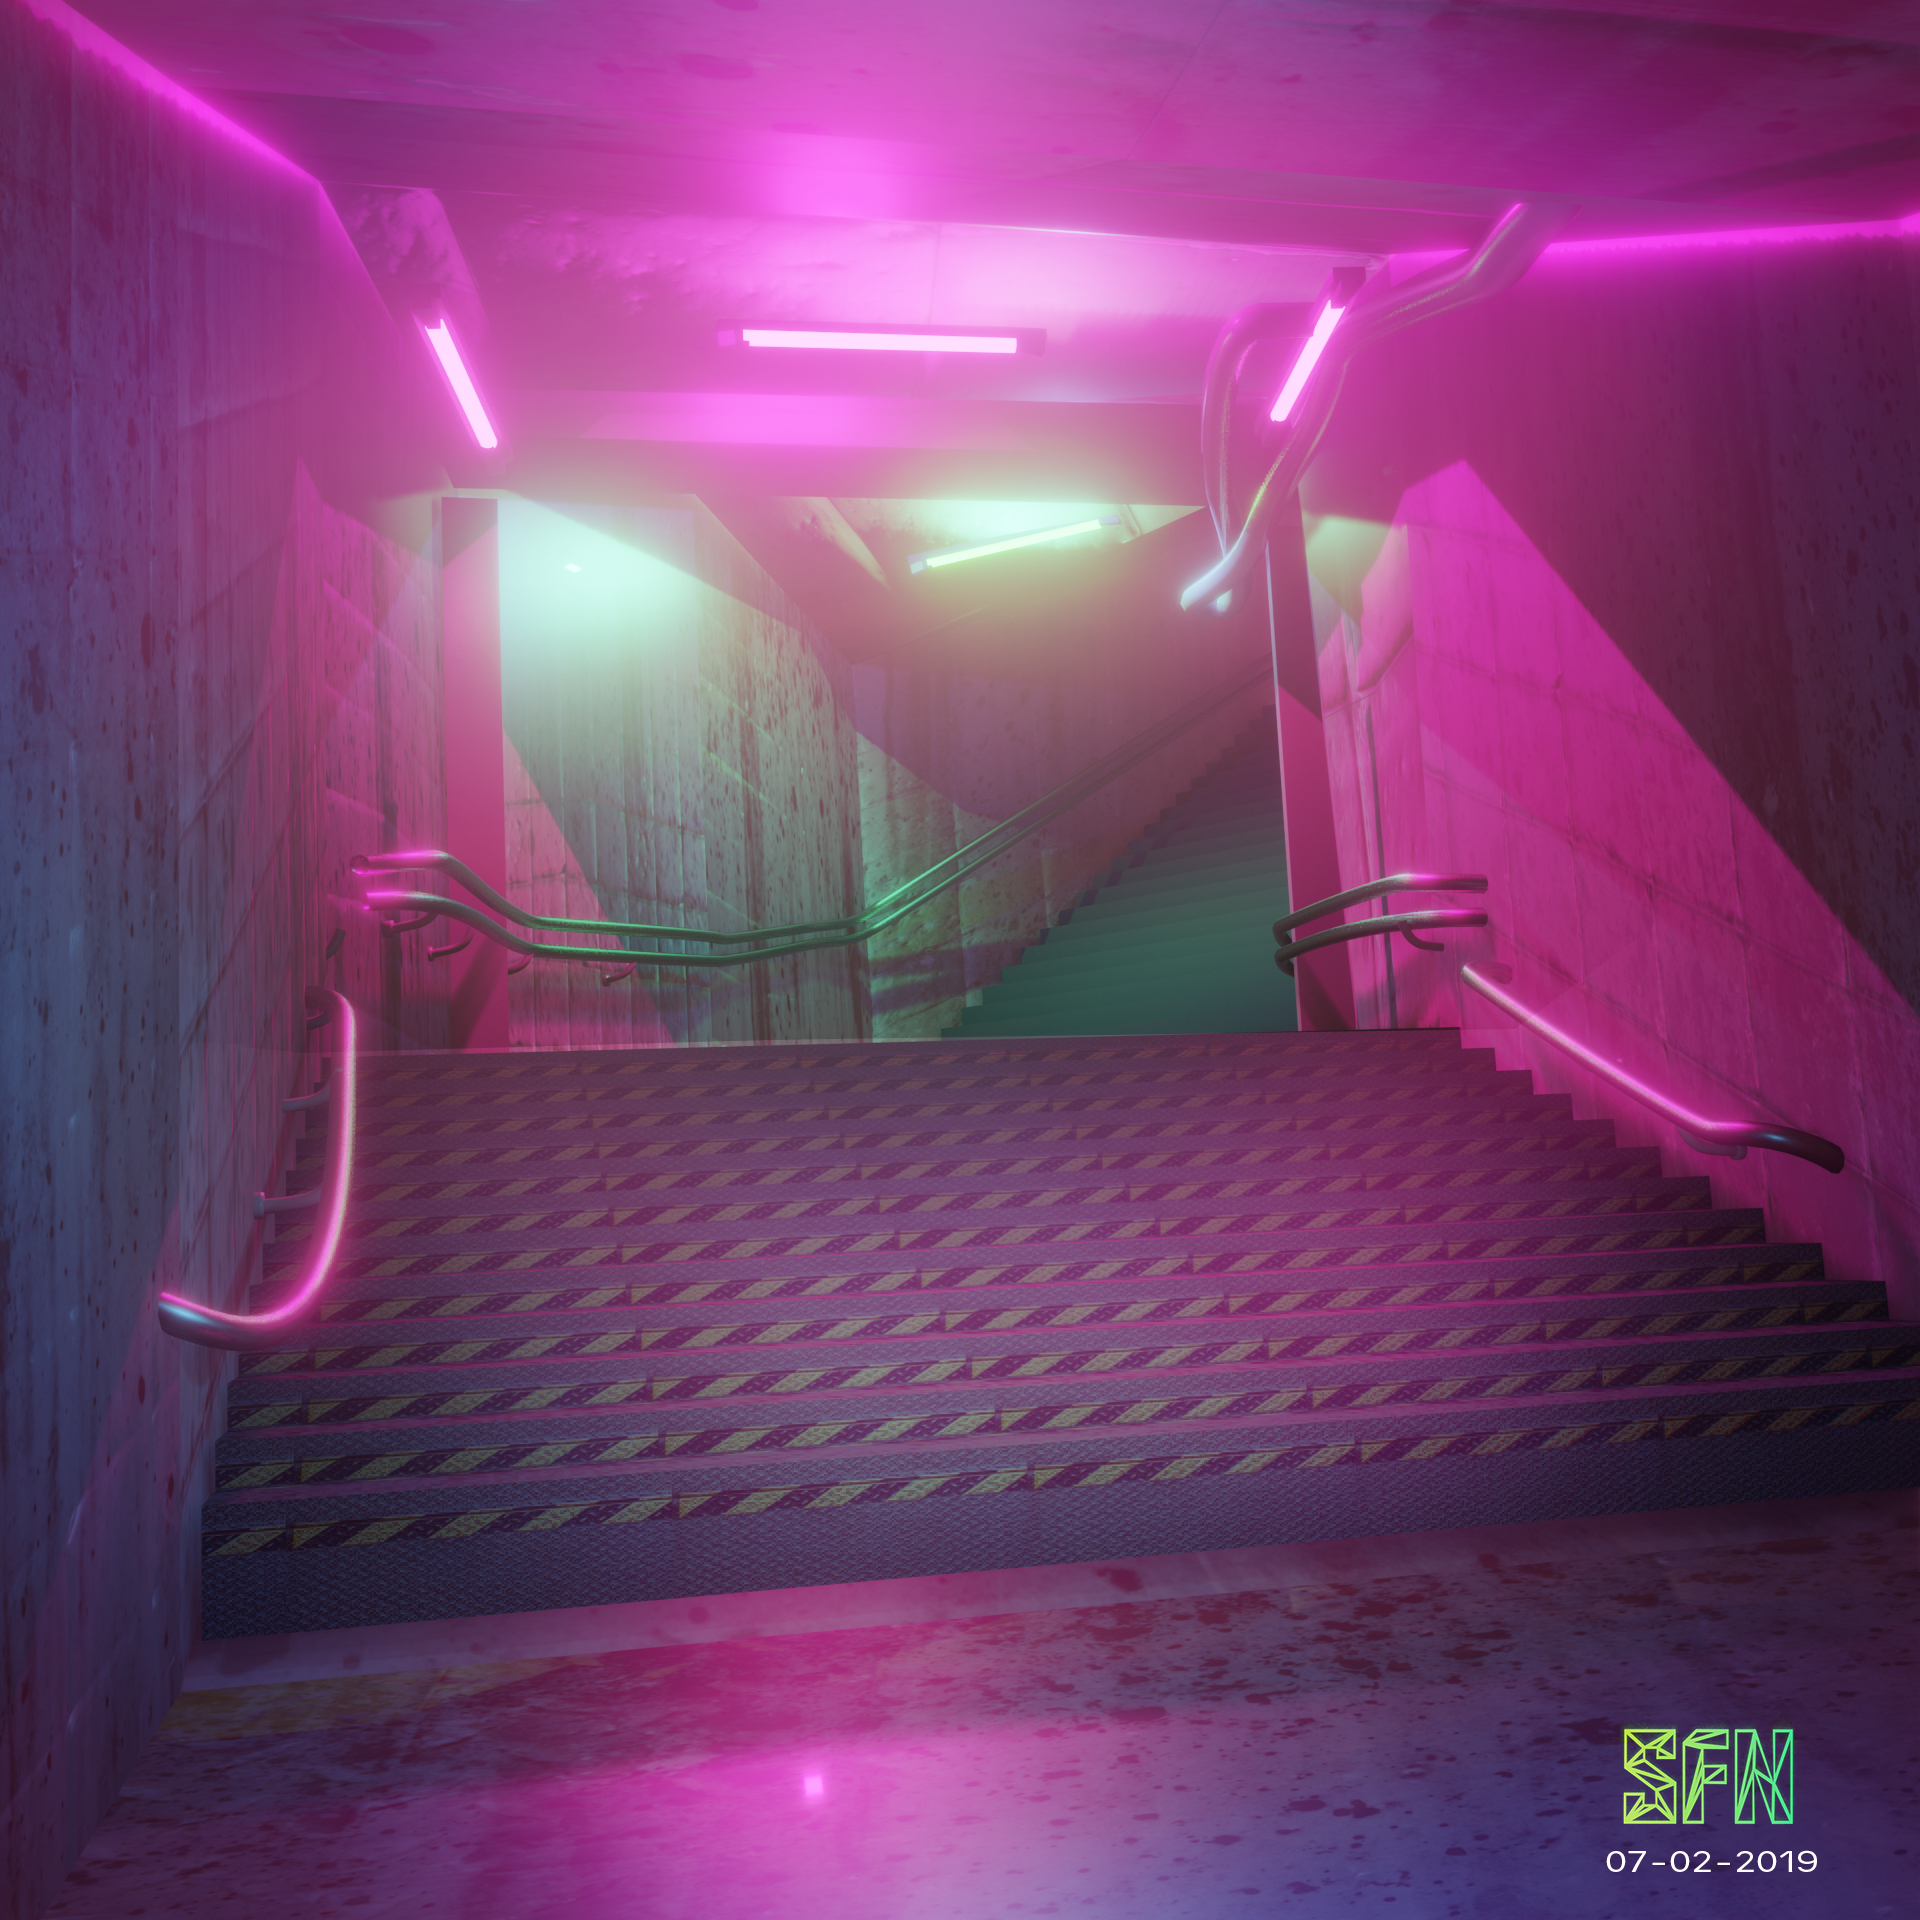 Neon Subway by Fina-Nz21 on DeviantArt